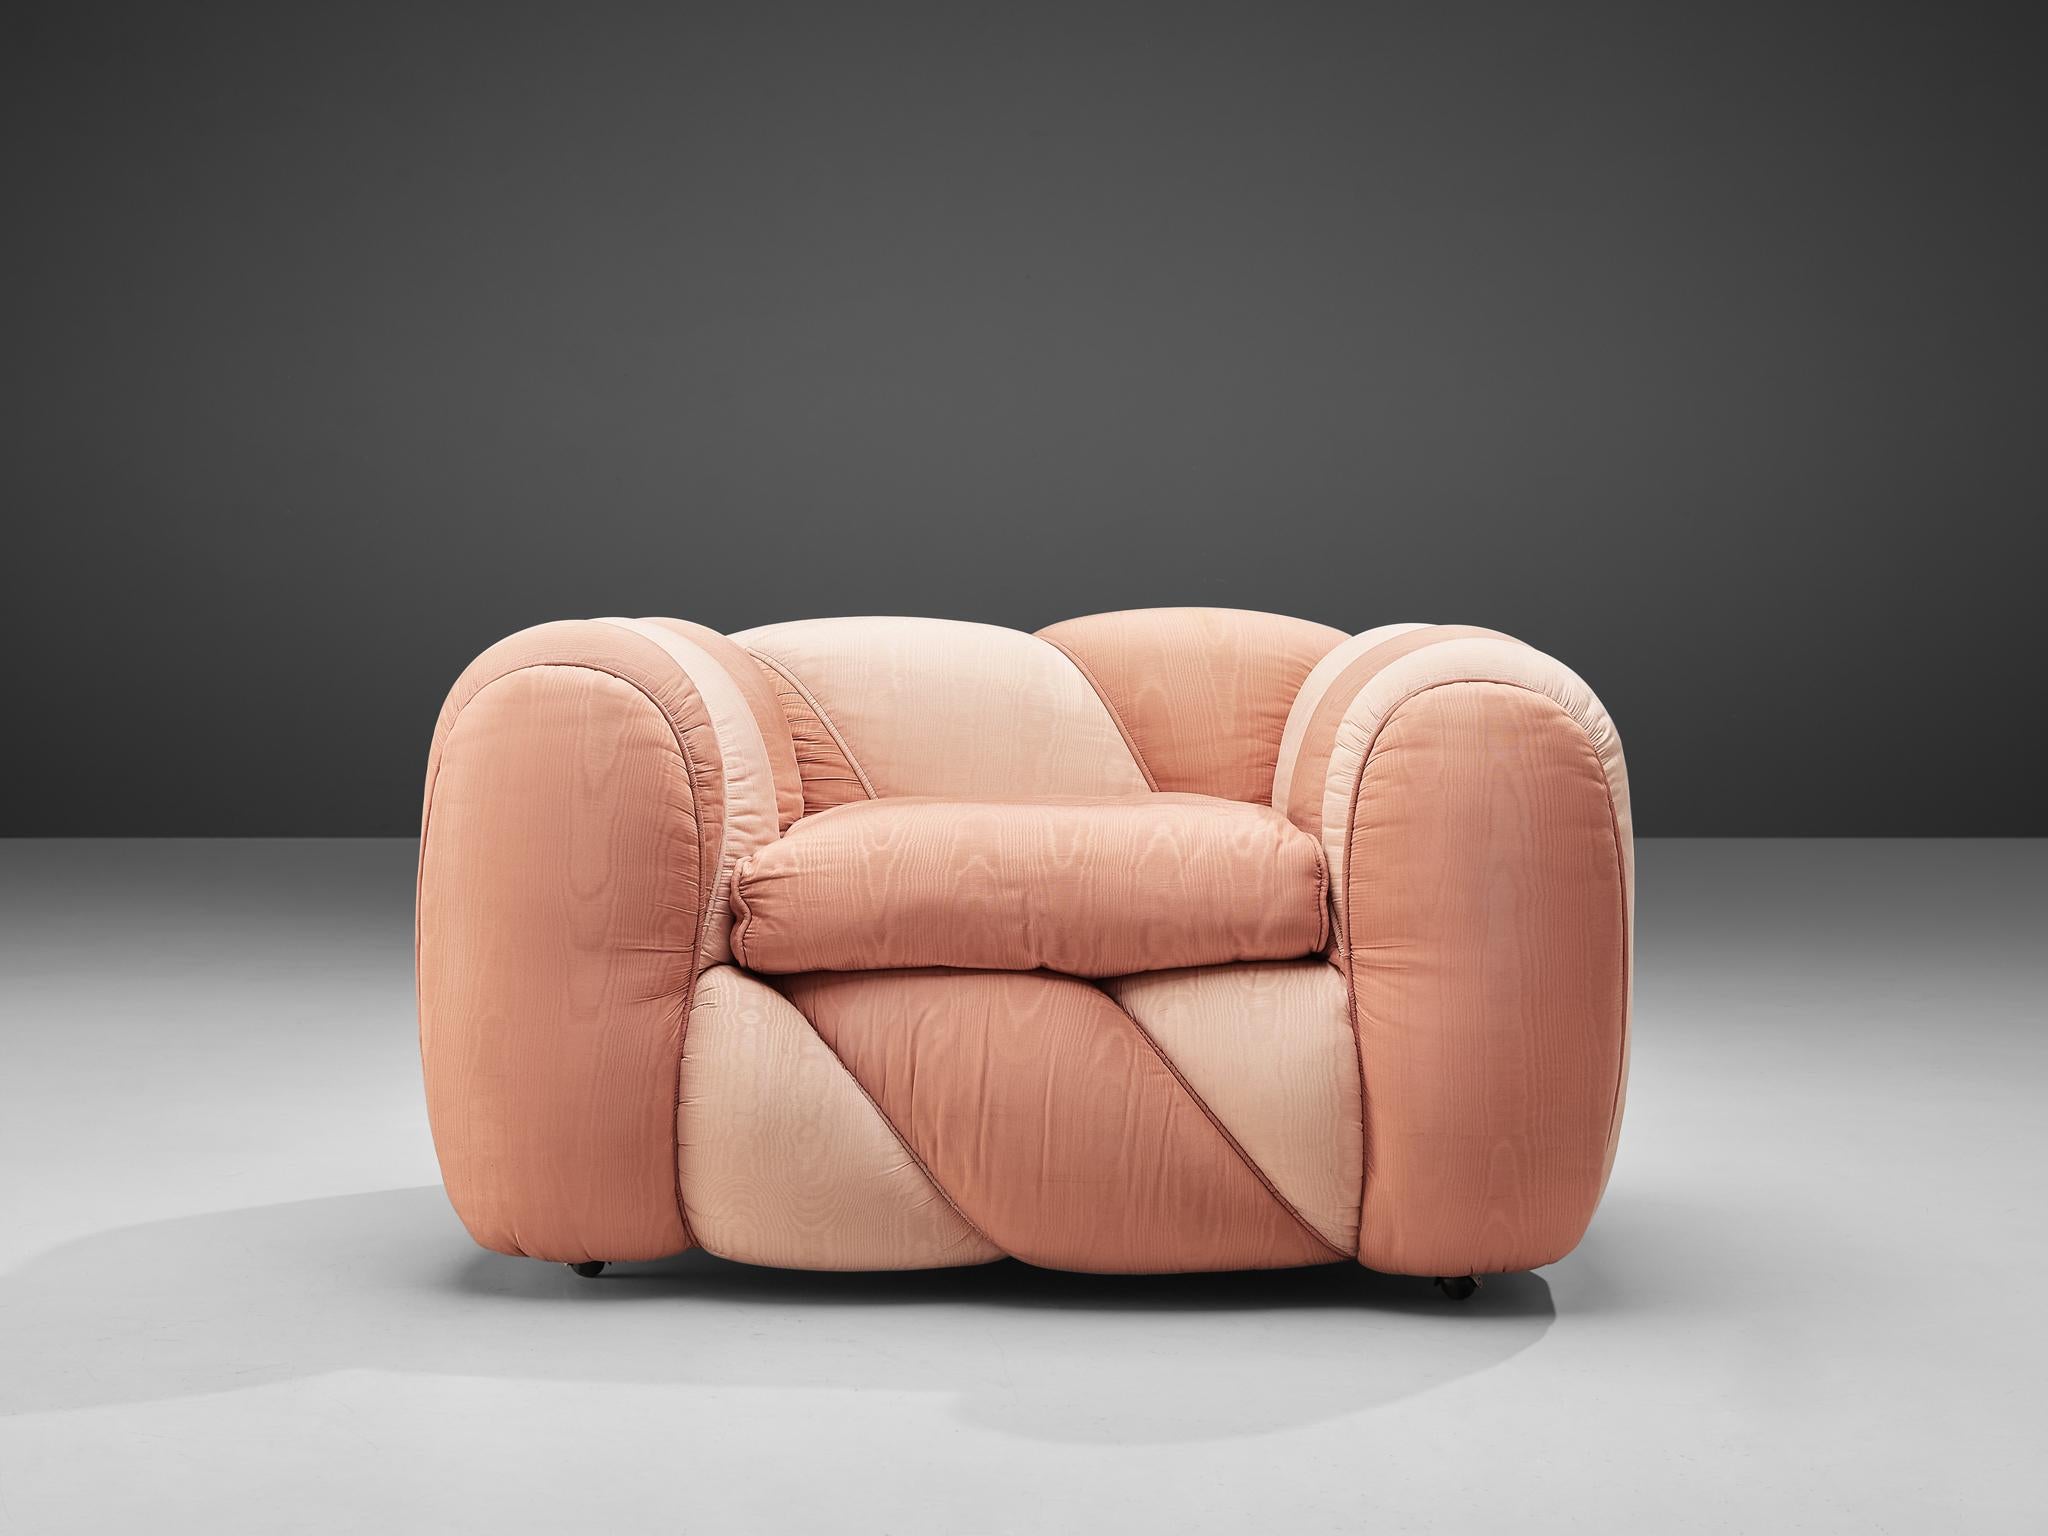 Vivai del Sud, chaise longue, revêtement en tissu rose, Italie, années 1970 

Cette chaise longue vibrante et joyeuse a été créée dans les années 1970. Cette chaise longue ludique est recouverte d'un tissu bicolore rose brillant. La forme lisse et